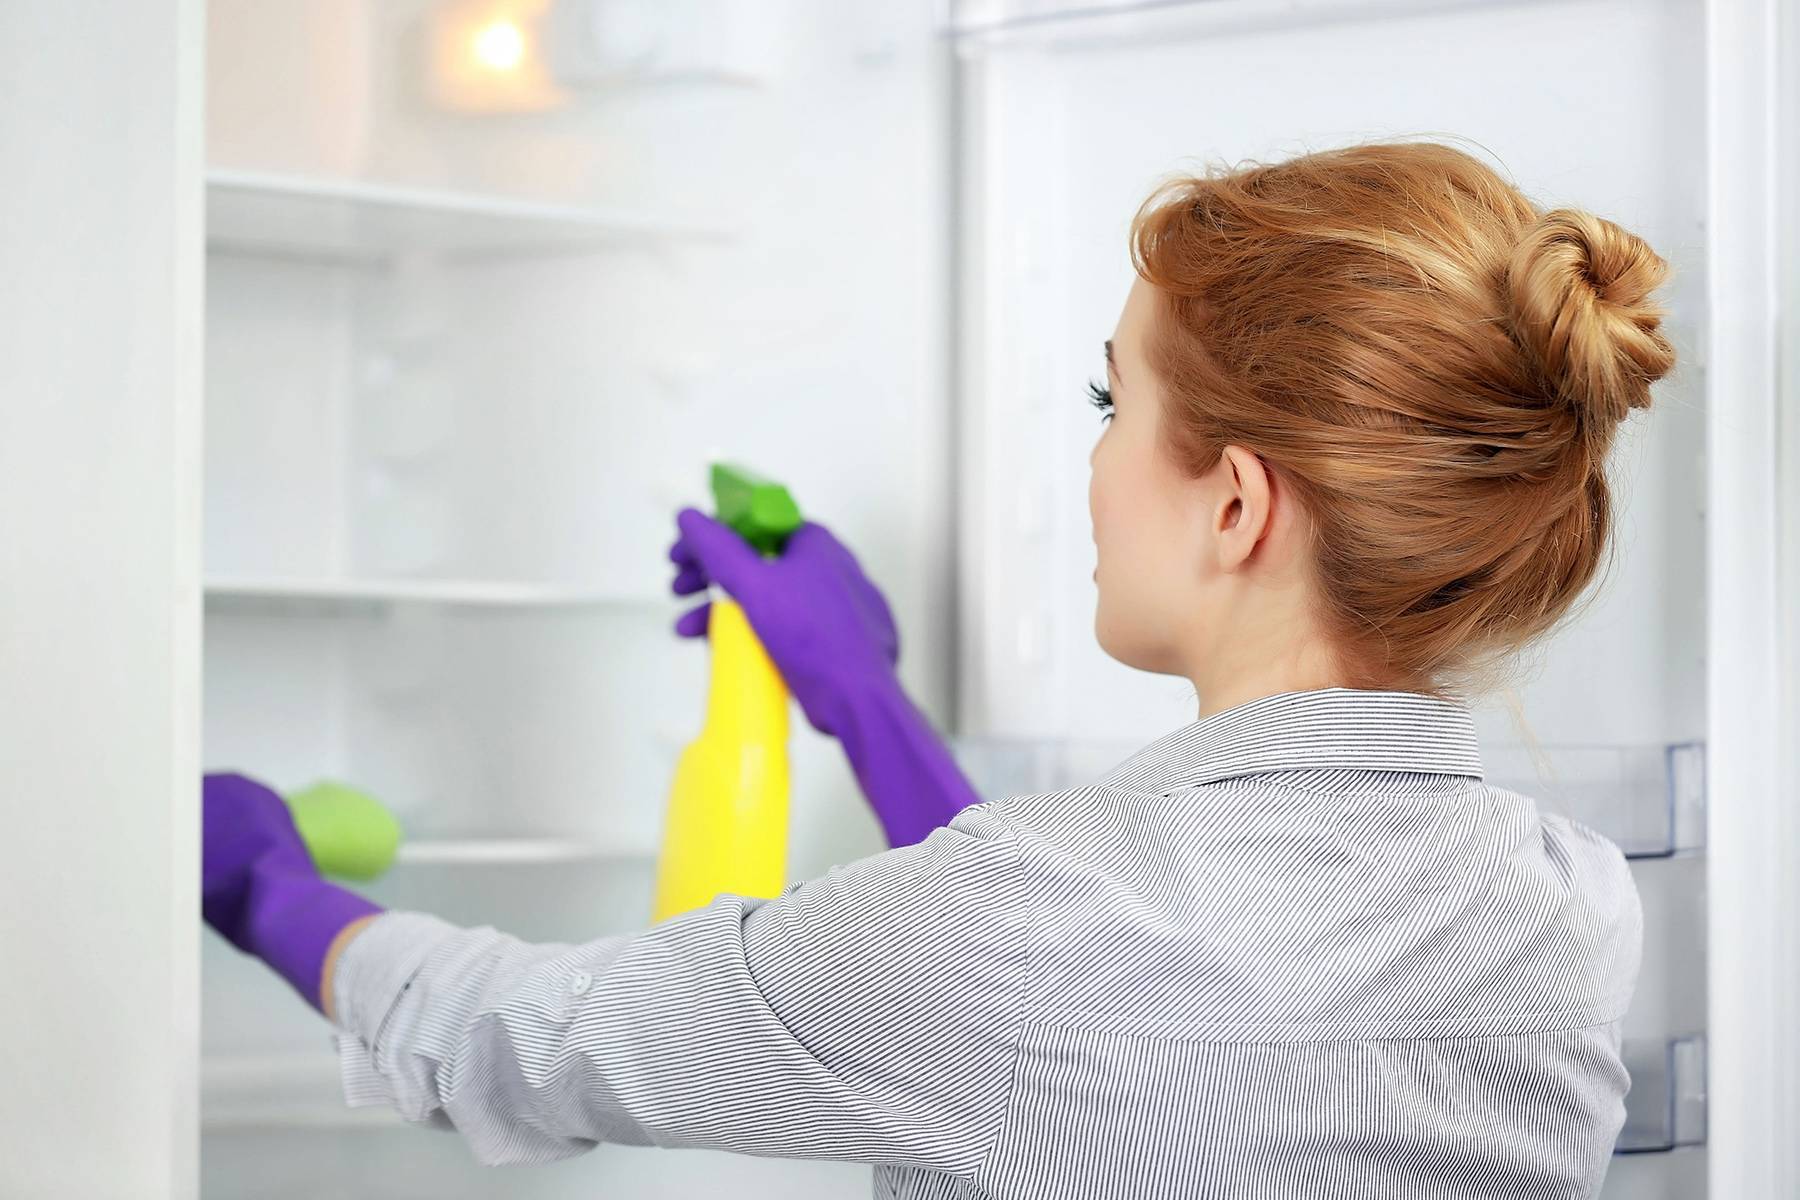 Как избавиться от запаха в холодильнике: способы быстро устранить вонь в домашних условиях